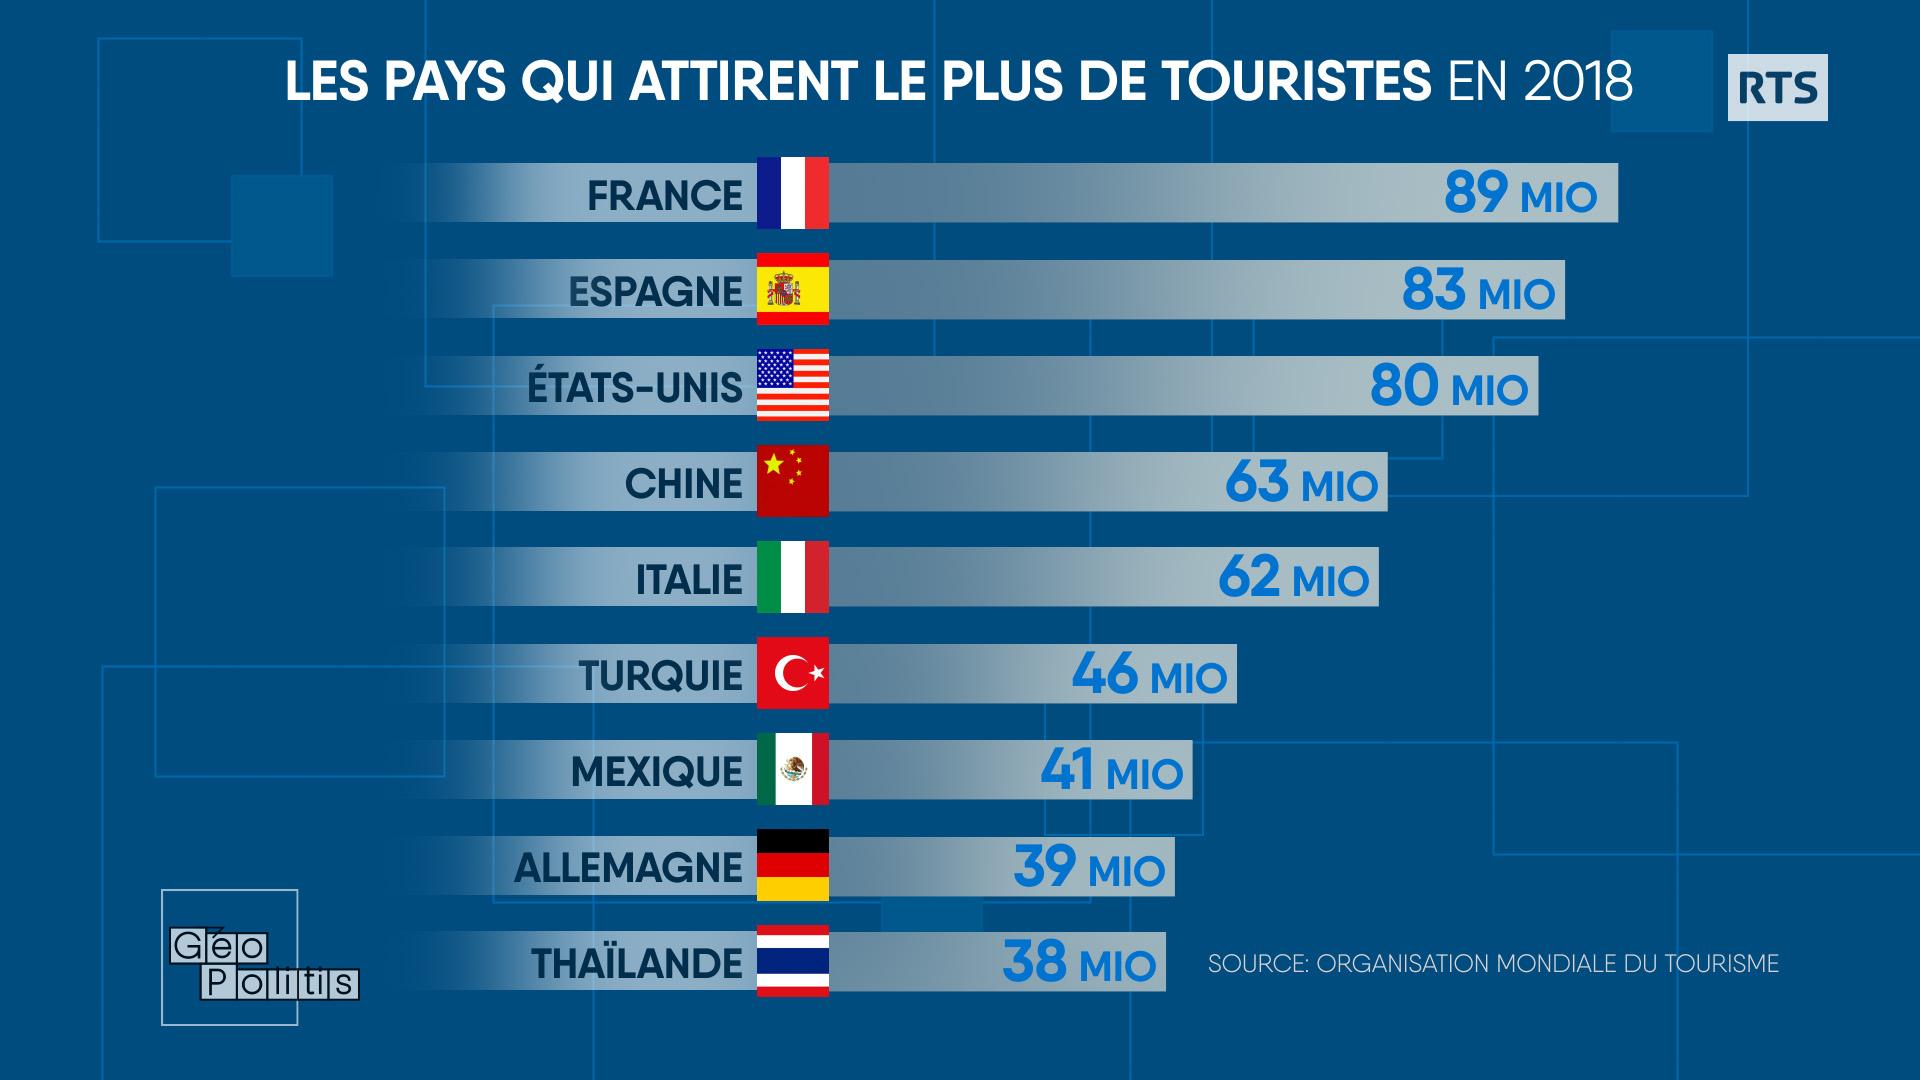 La France était le pays le plus visité avant la pandémie. [RTS - Géopolitis]